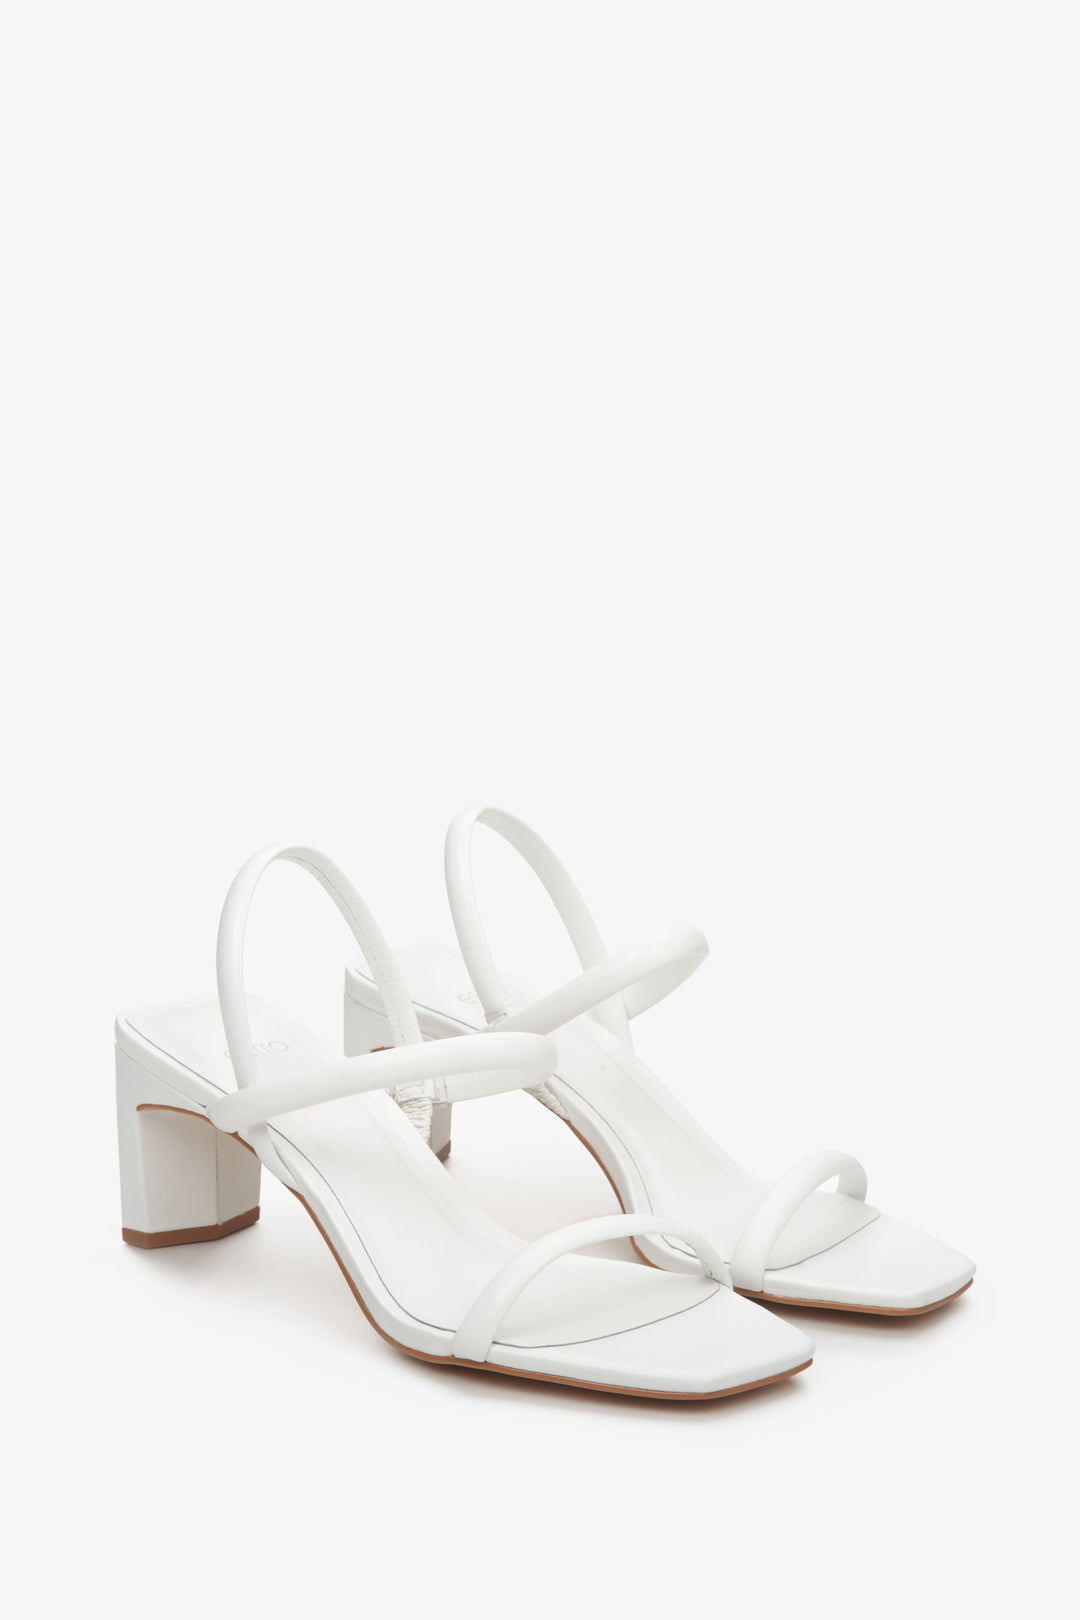 Wygodne, skórzane sandały damskie na słupku marki Estro w kolorze białym.